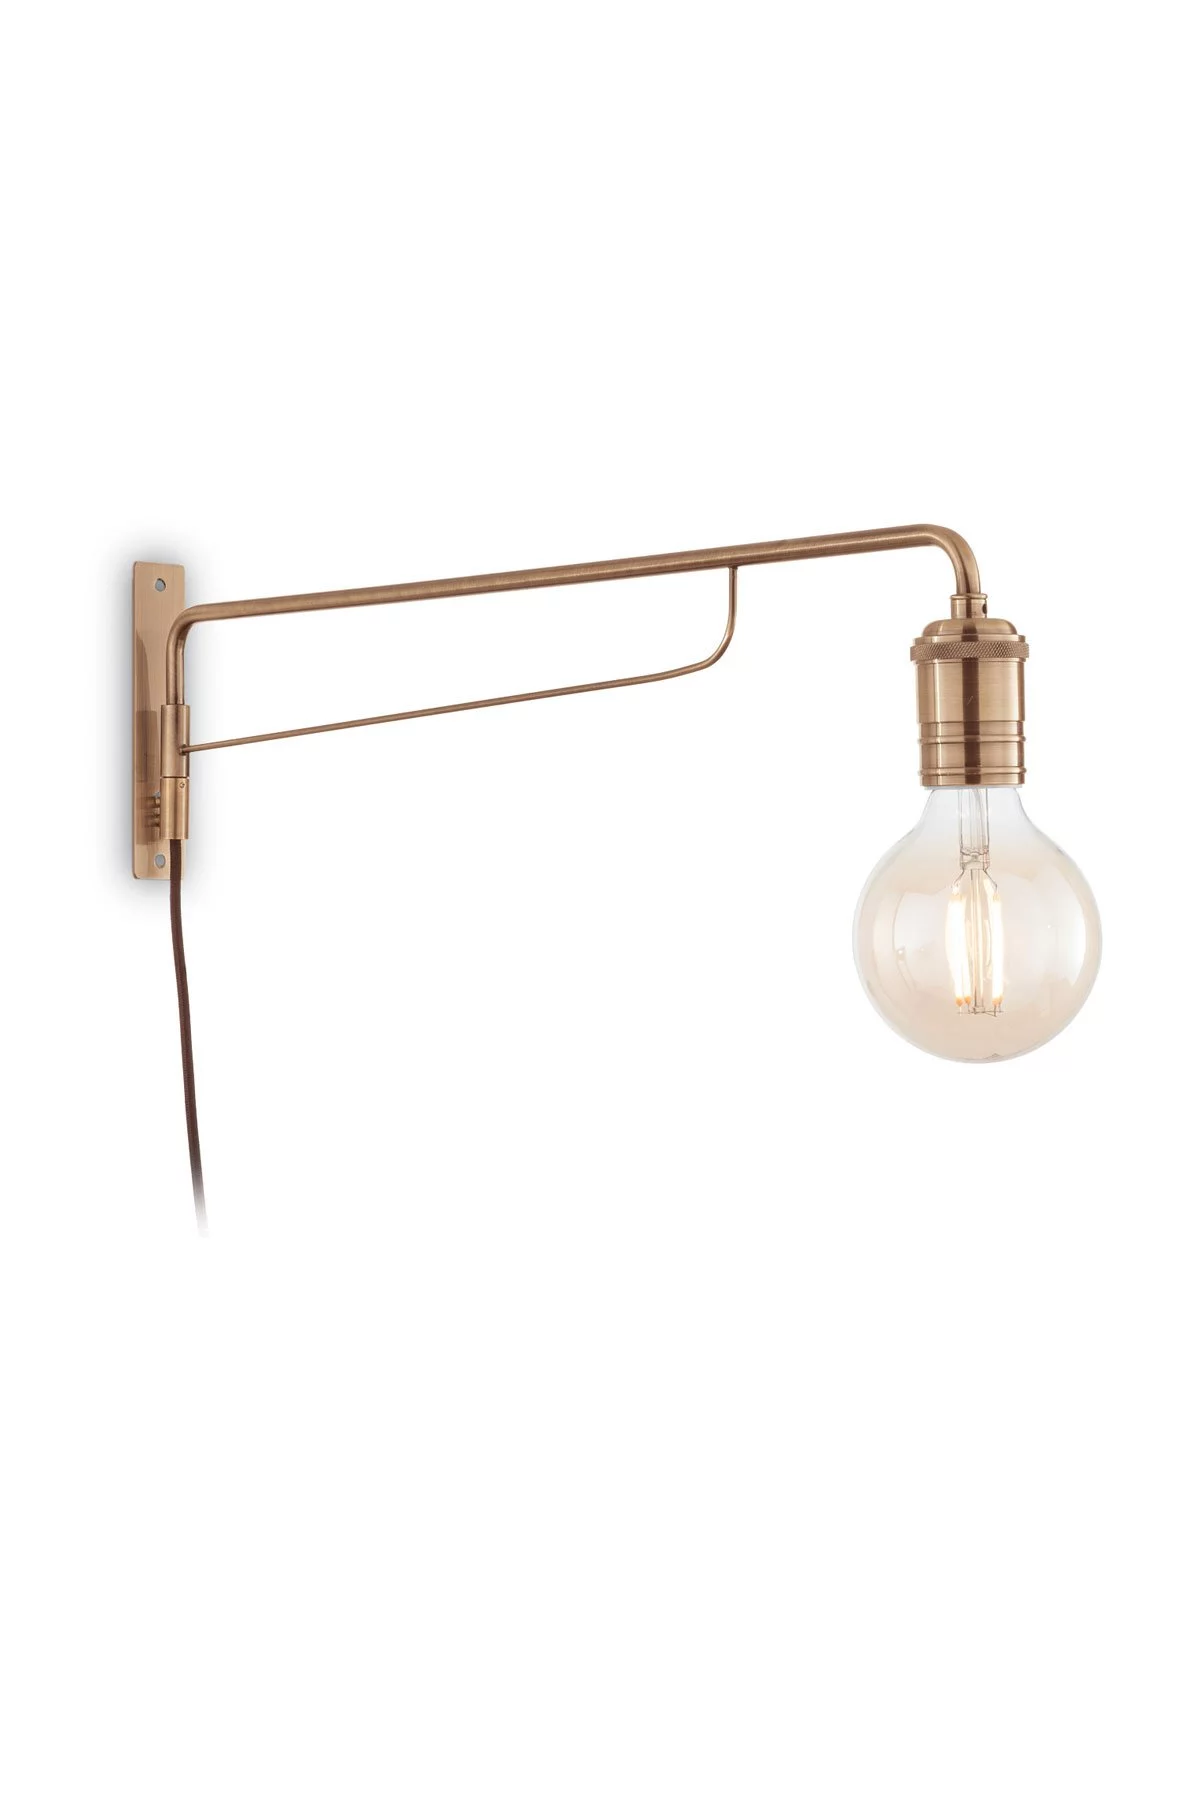   
                        Бра IDEAL LUX  (Италия) 13157    
                         в стиле Лофт.  
                        Тип источника света: светодиодная лампа, сменная.                                                                                                  фото 1